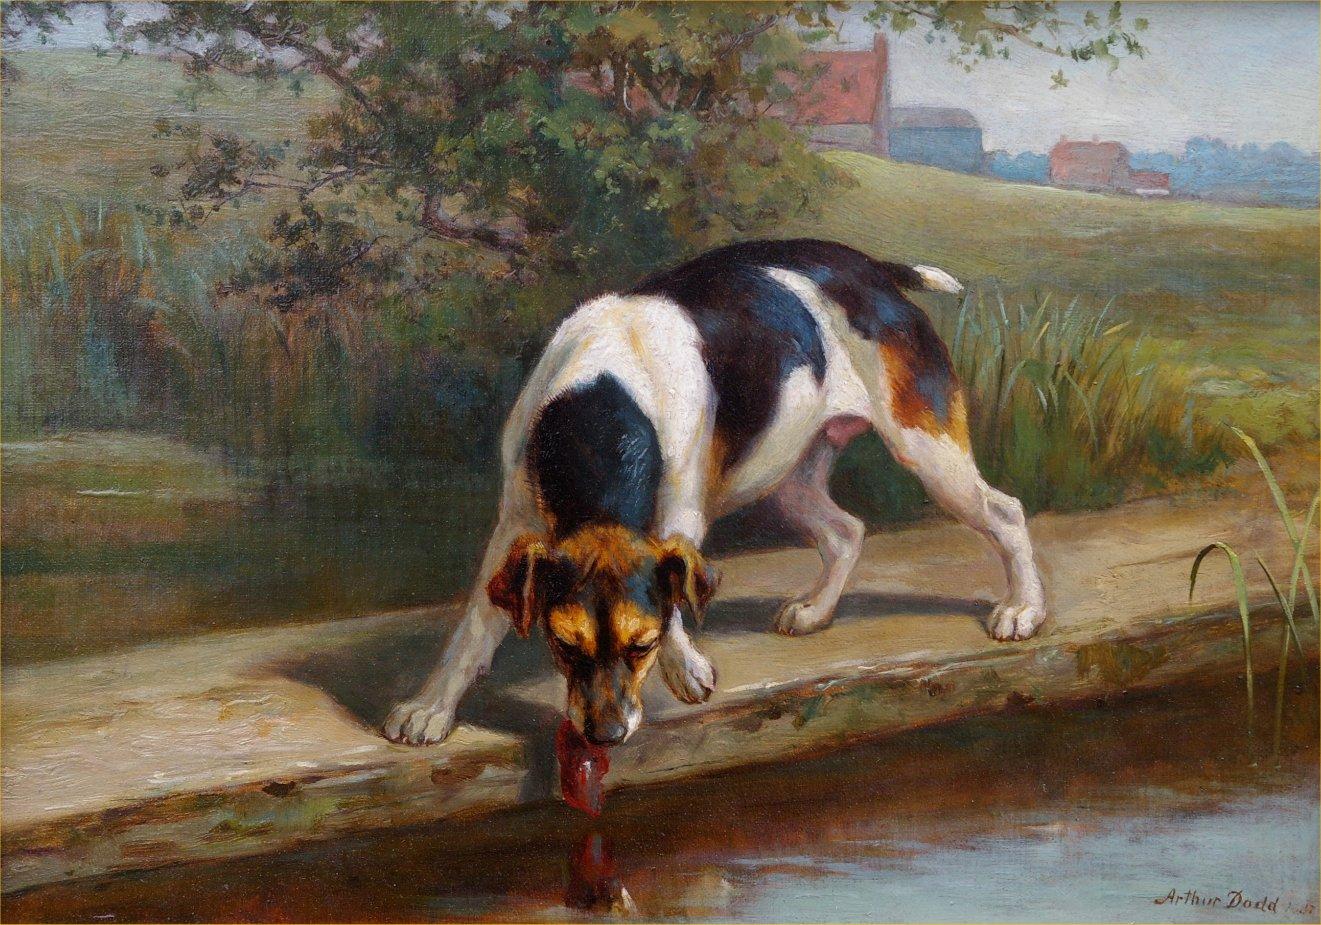 Animal Painting Arthur Dodd - Trouver son esprit d'observateur